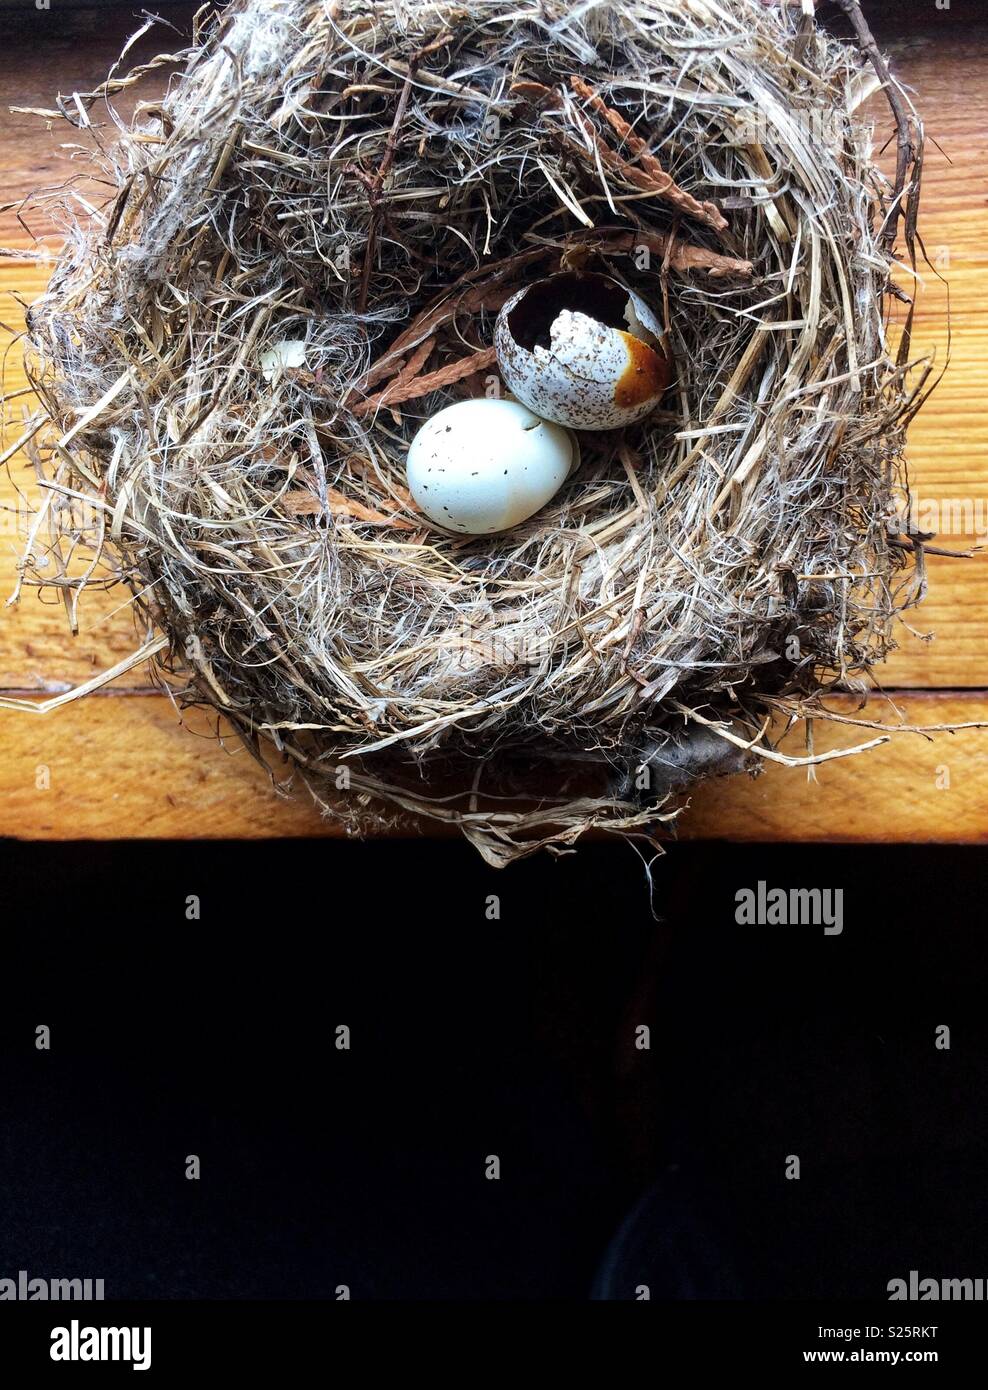 https://c8.alamy.com/comp/S25RKT/birds-nest-with-speckled-eggs-S25RKT.jpg